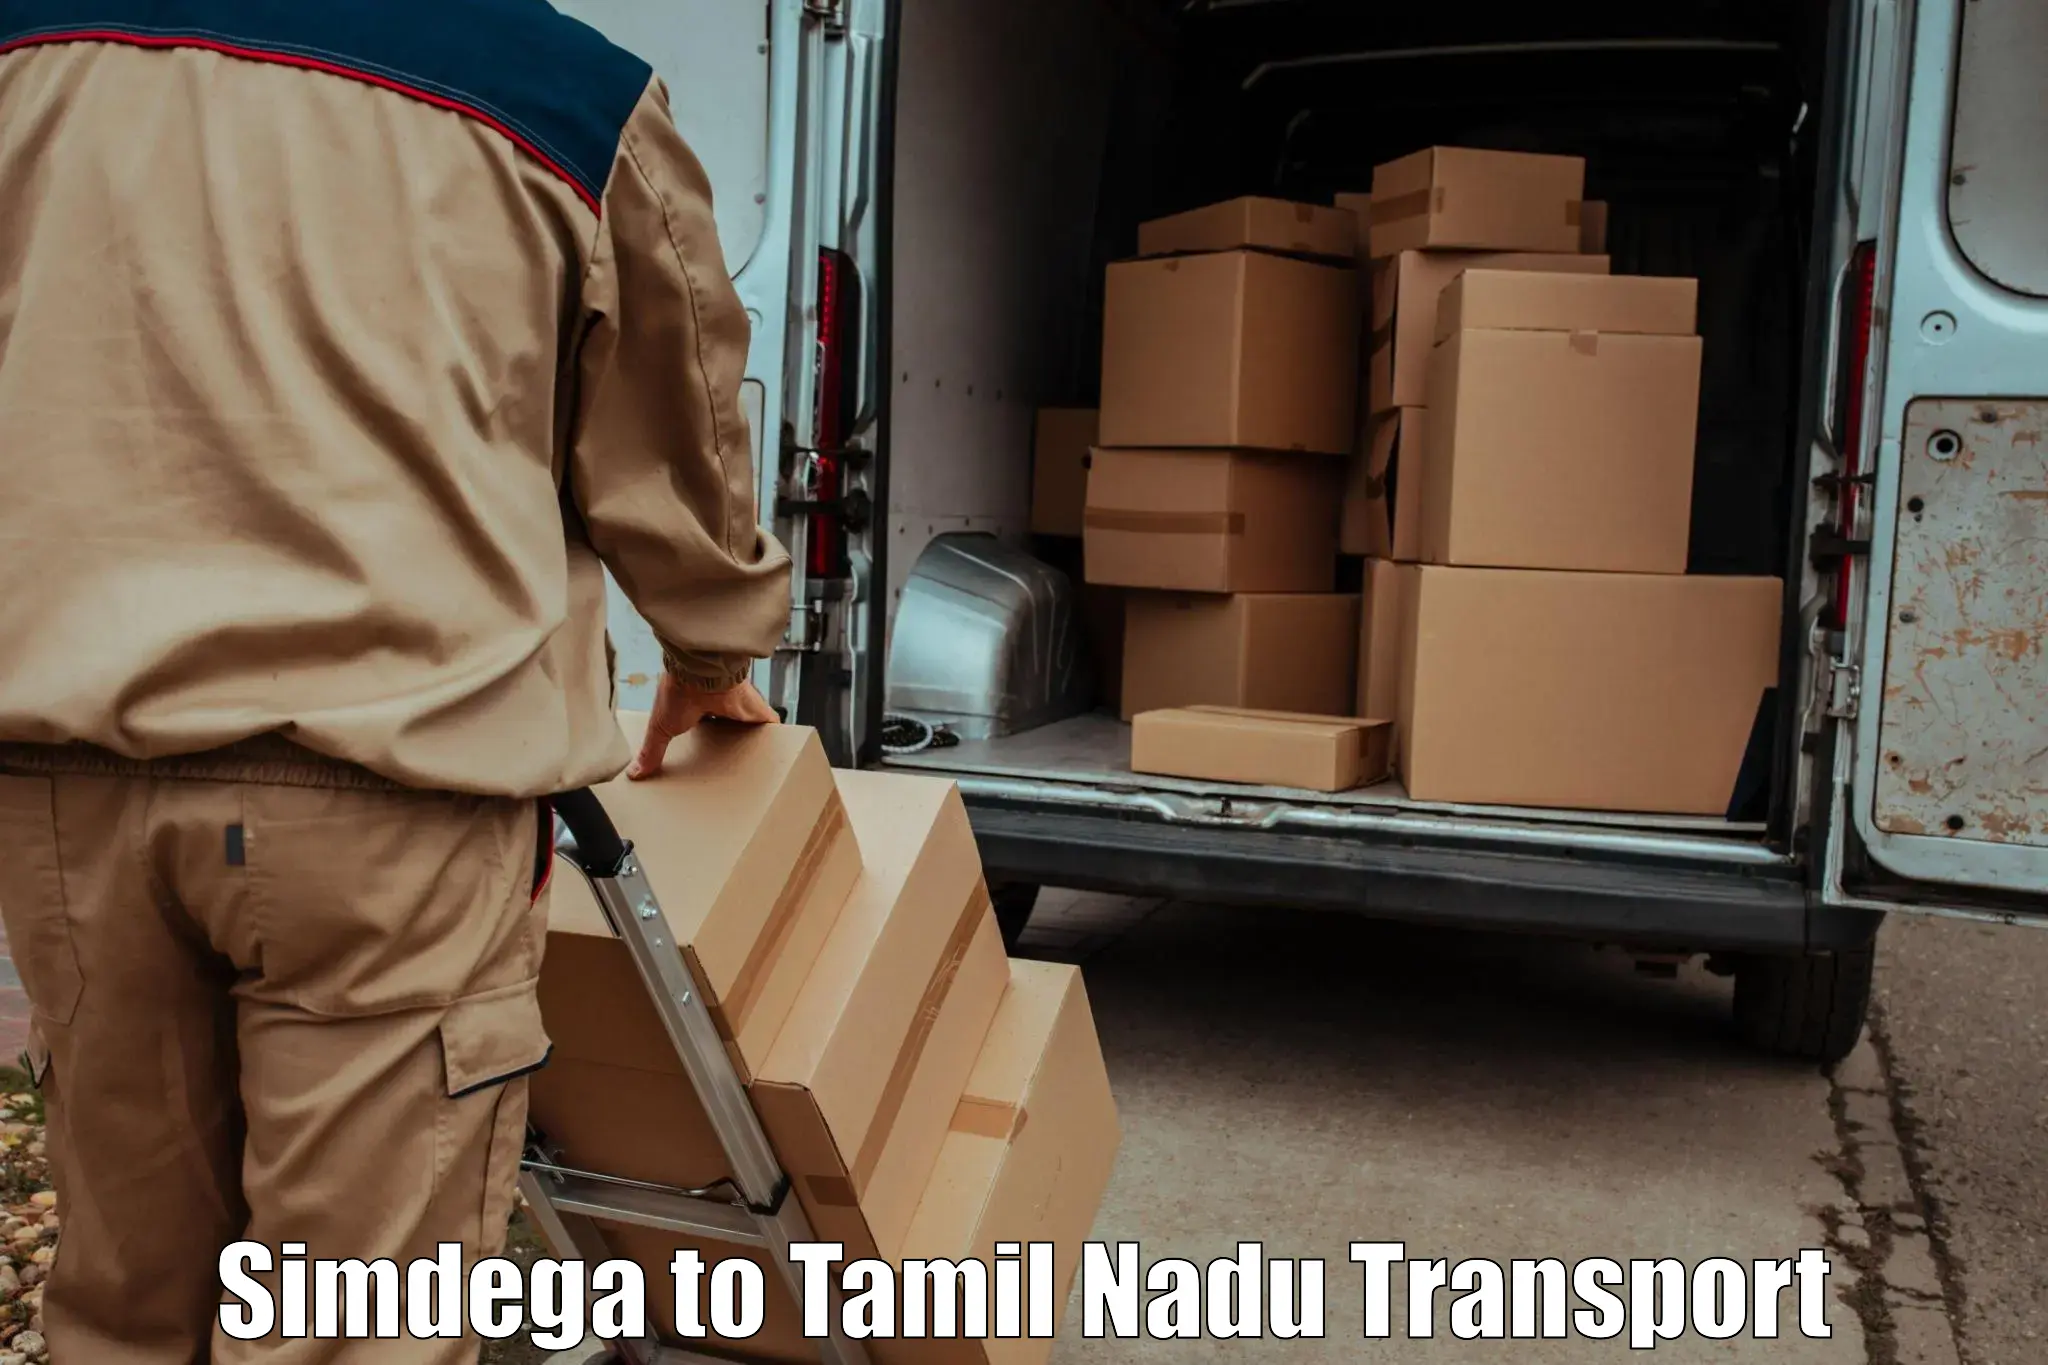 All India transport service Simdega to Kodaikanal